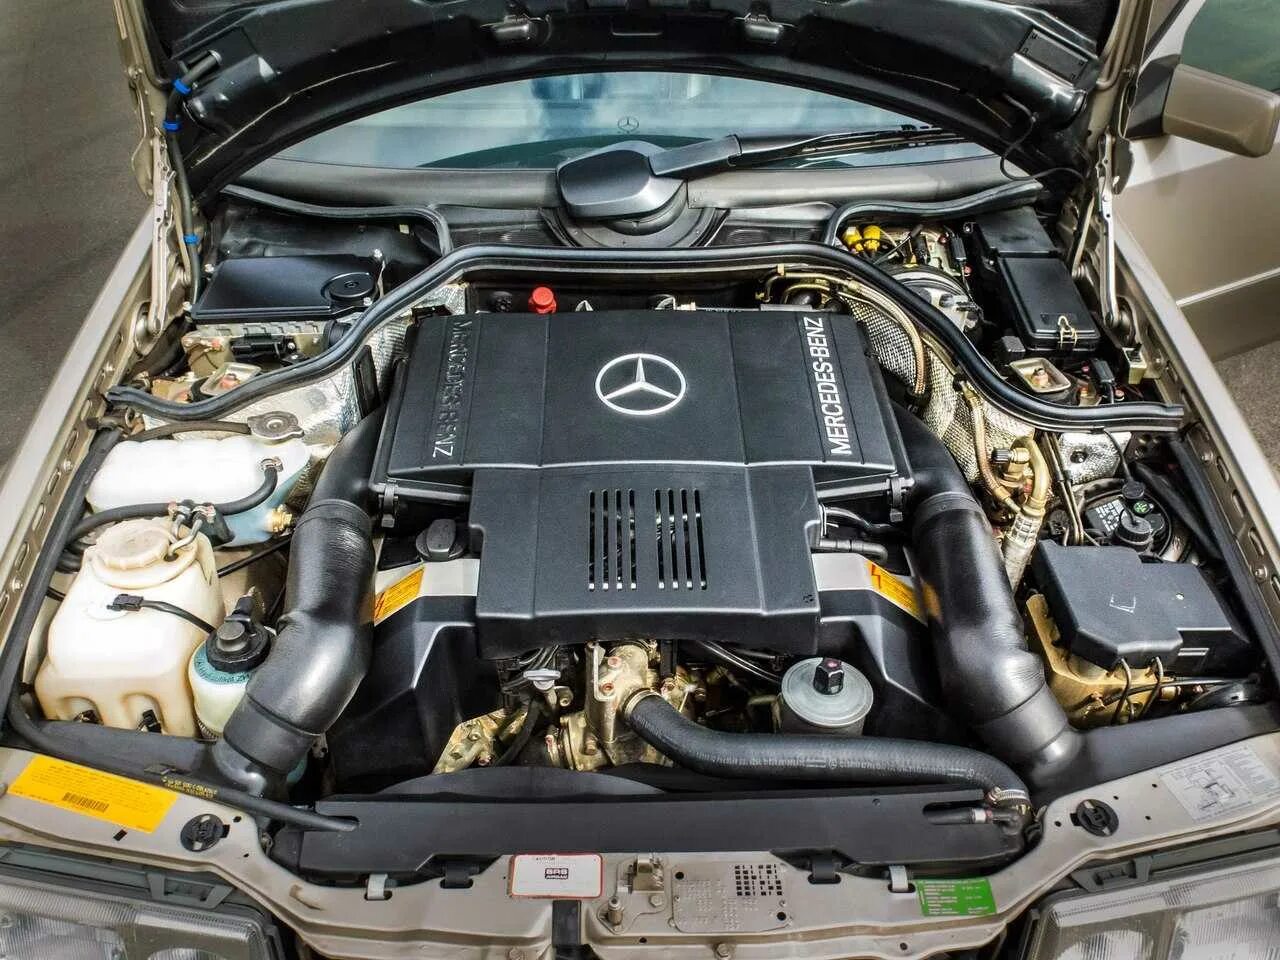 Mercedes e двигатели. Mercedes Benz w124 мотор. Mercedes Benz w124 e500. Mercedes Benz w124 500e двигатель. W124 e500 мотор.